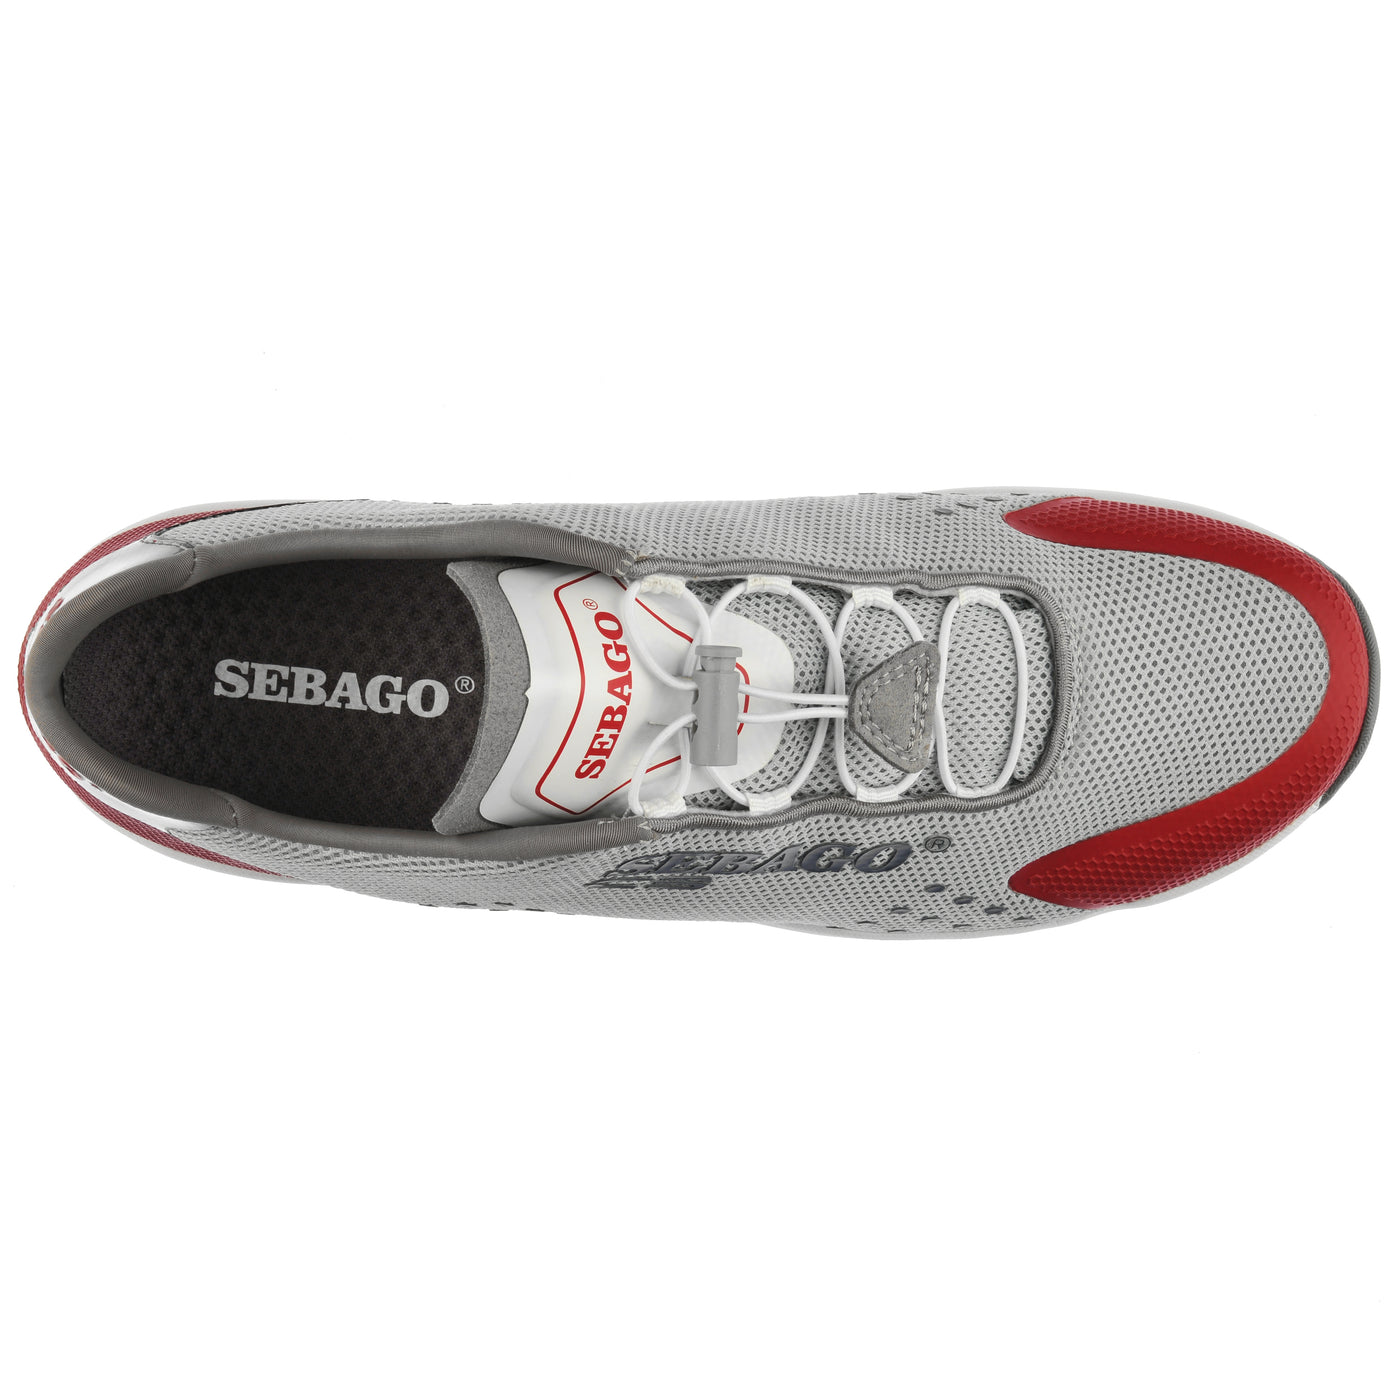 Men's Sneakers | Sebago | Marine | Cyphon Jia Ren | Light Gray & Red | Top View